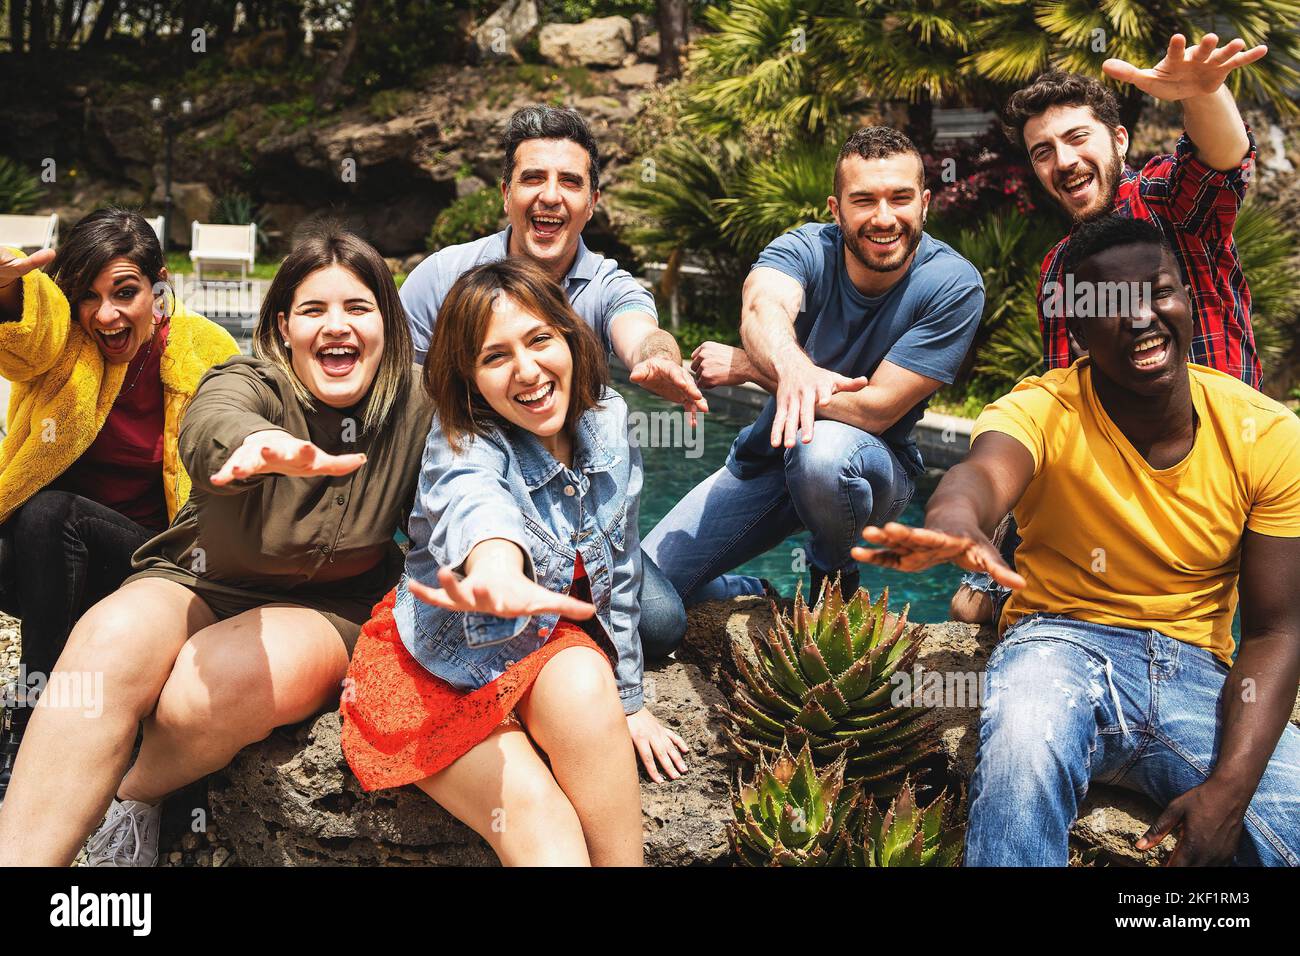 Fröhliche multiethnische vielfältige Gruppe von jungen Menschen, die Spaß haben zusammen posieren Blick auf die Kamera mit ausgestreckten Armen - glückliche Menschen Lebensstil Konz Stockfoto